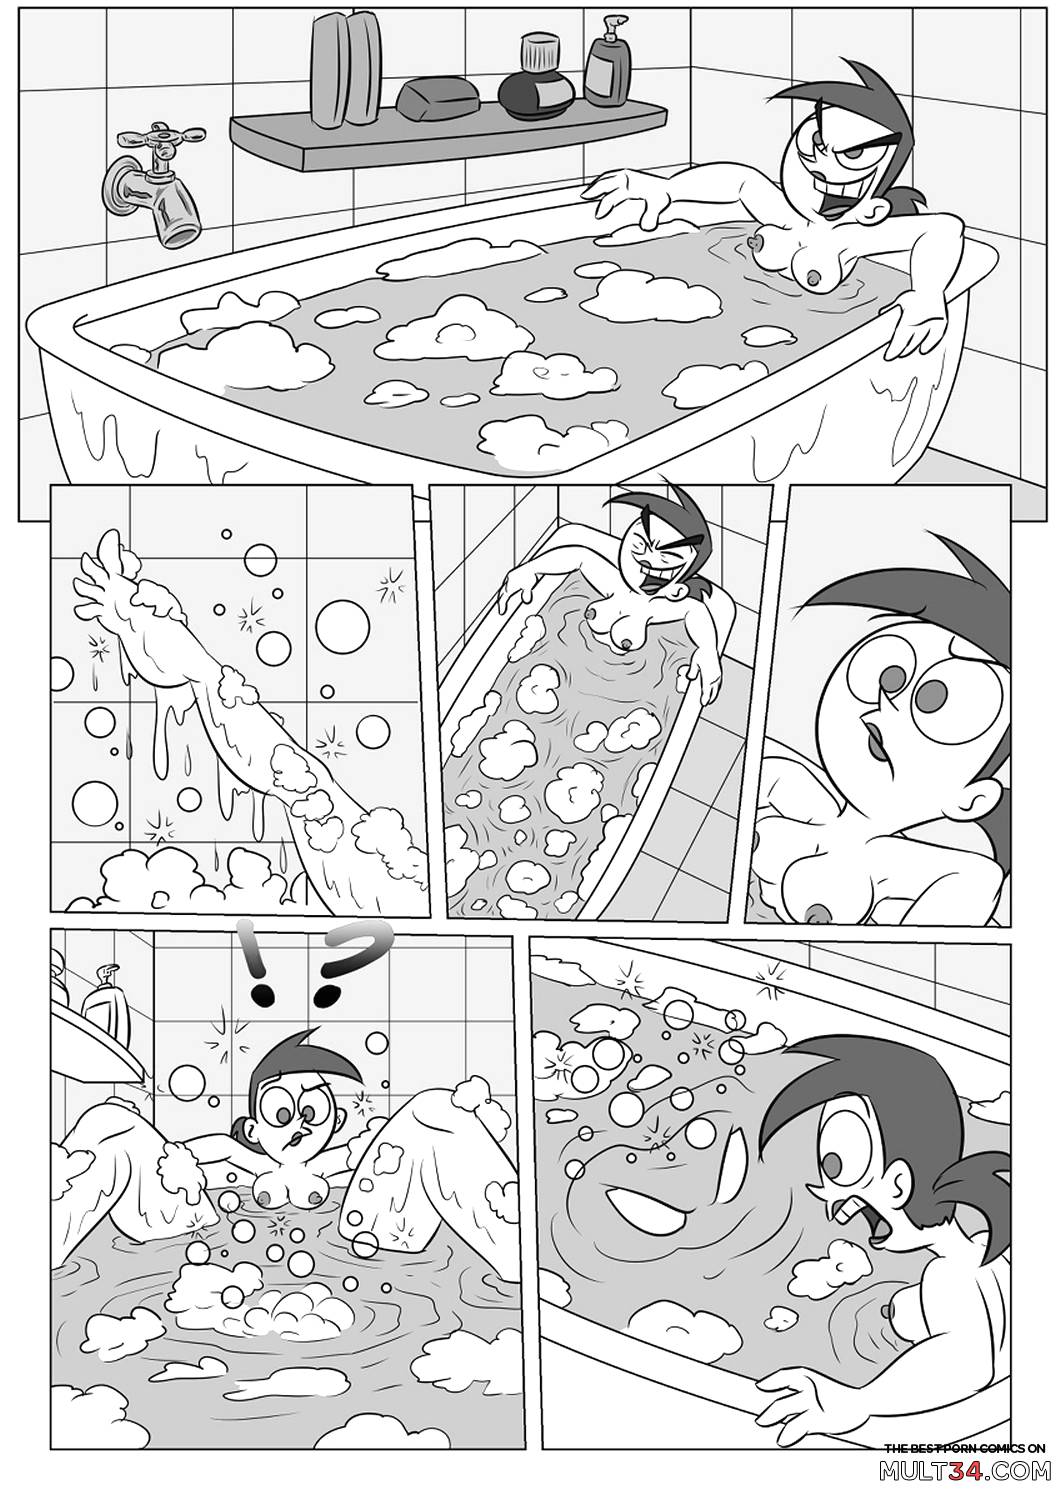 Bathtime fun page 3